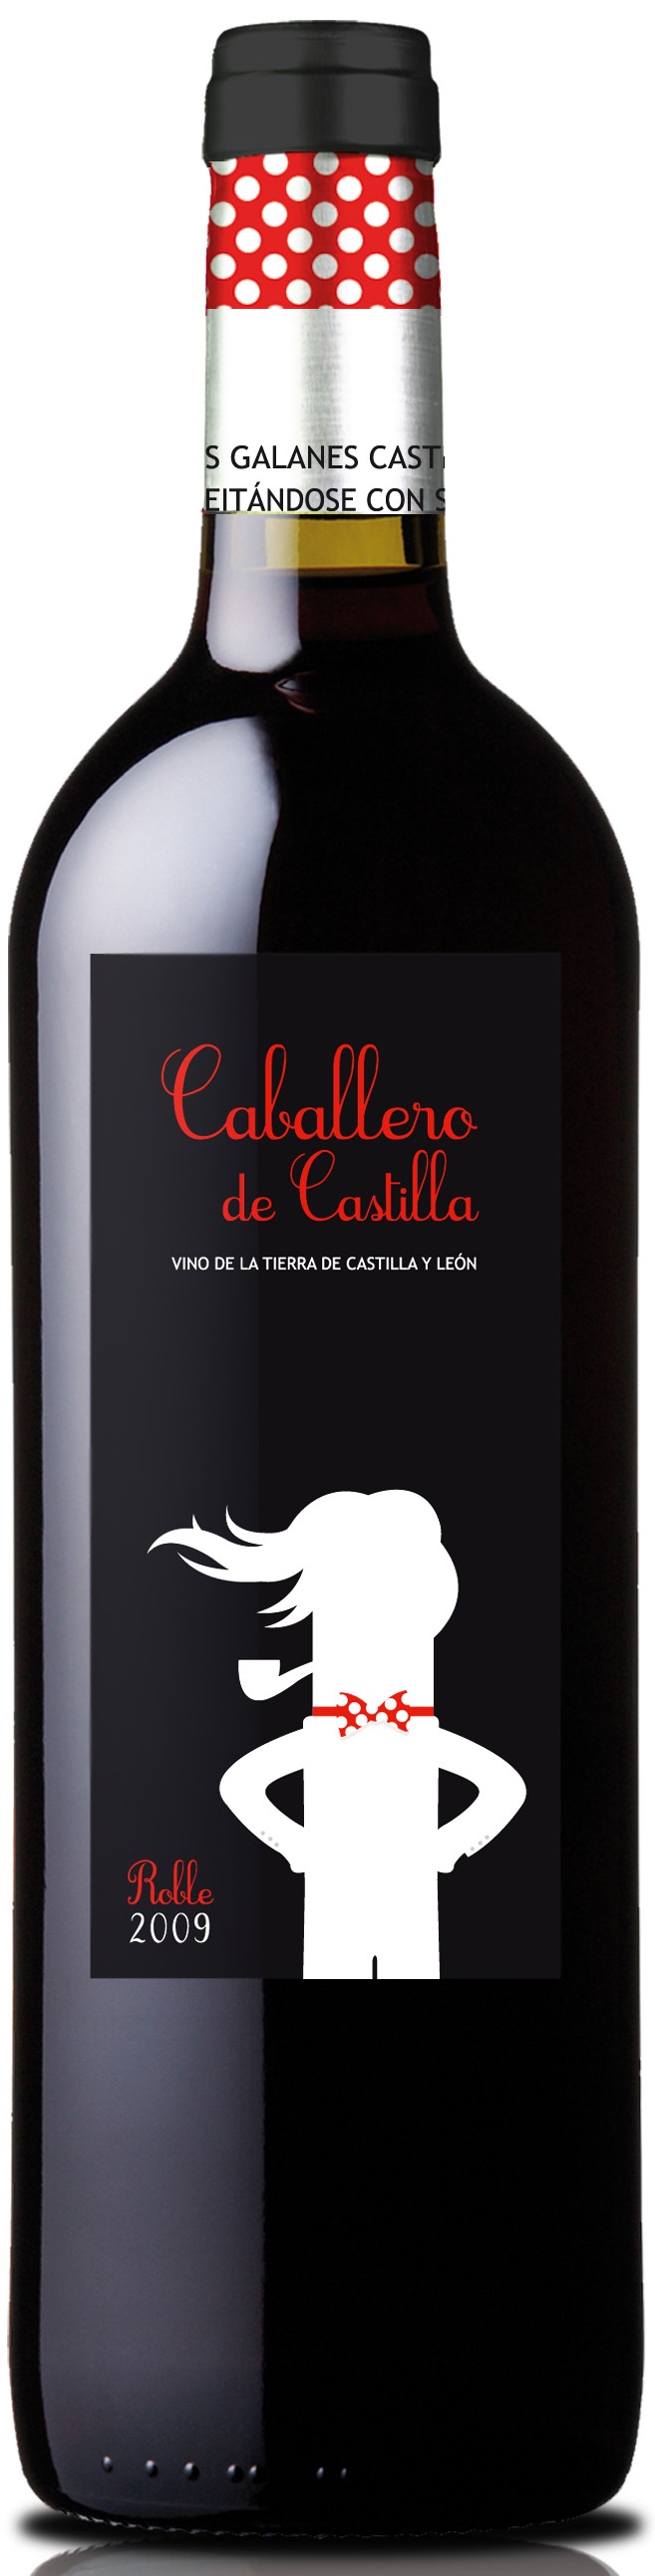 Logo Wine Caballero de Castilla Roble